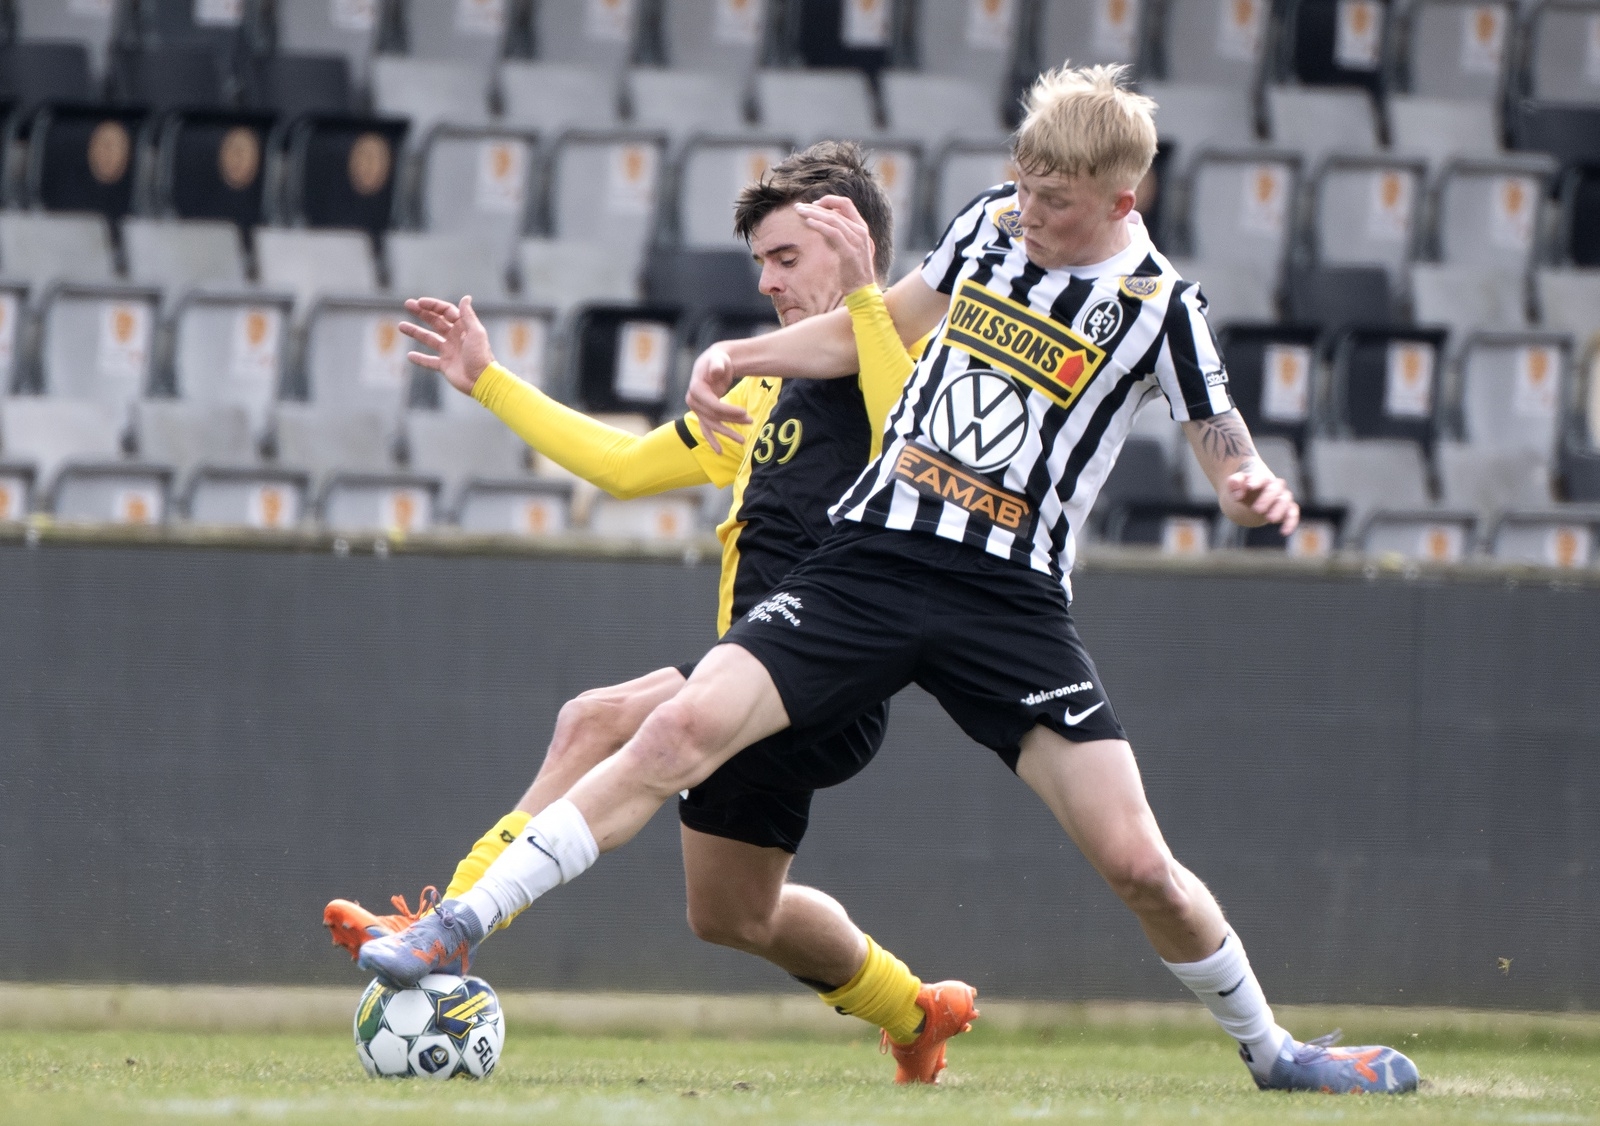 MJÄLLBY AIF- Landskrona BOIS genrep allsvenskan fotboll
Jesper Gustavsson